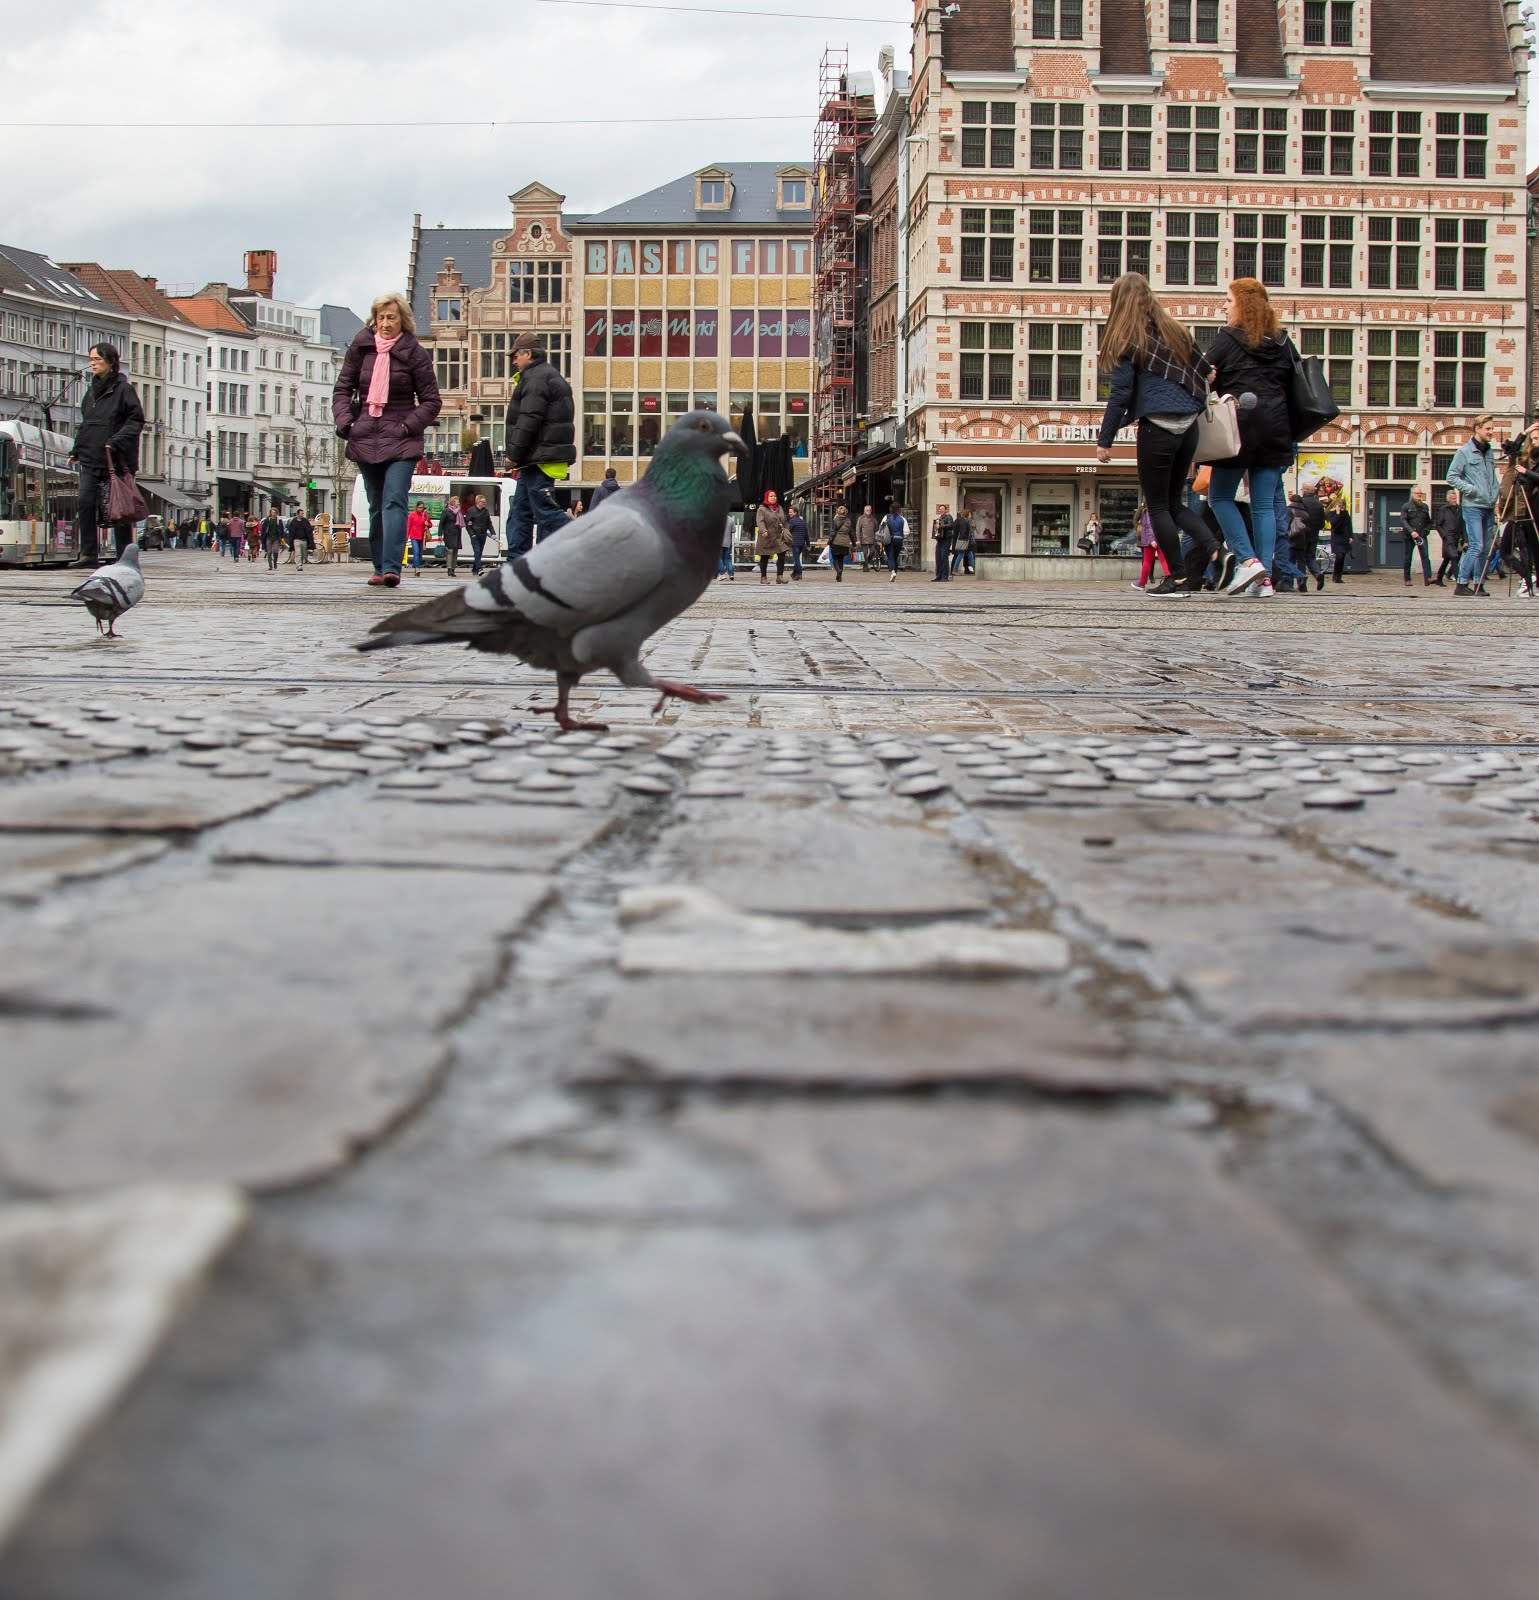 ooghoogte duif in Gent